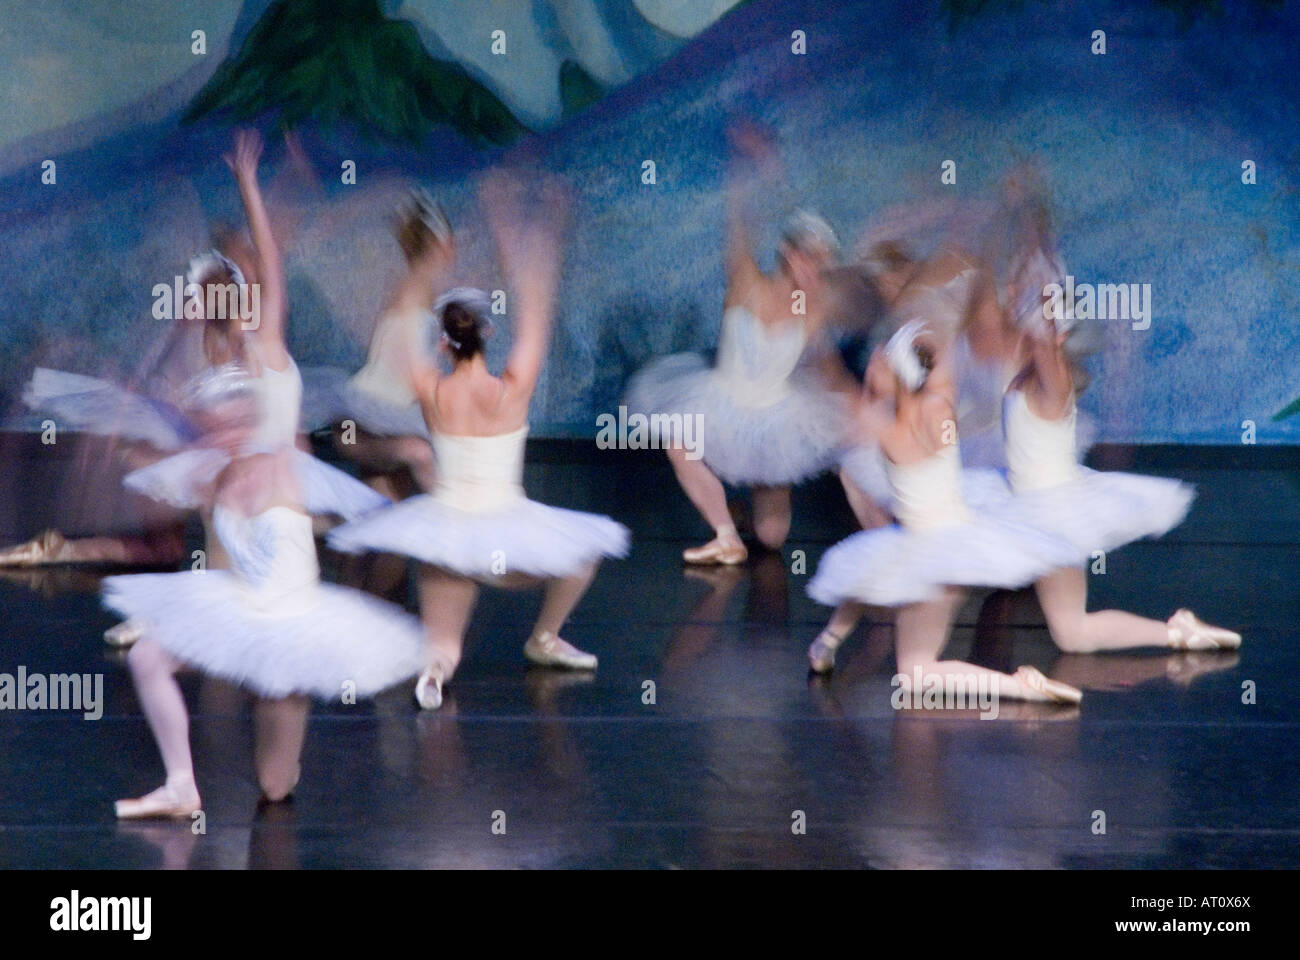 Abstract ballet scena dalla scena di neve in Schiaccianoci Foto Stock